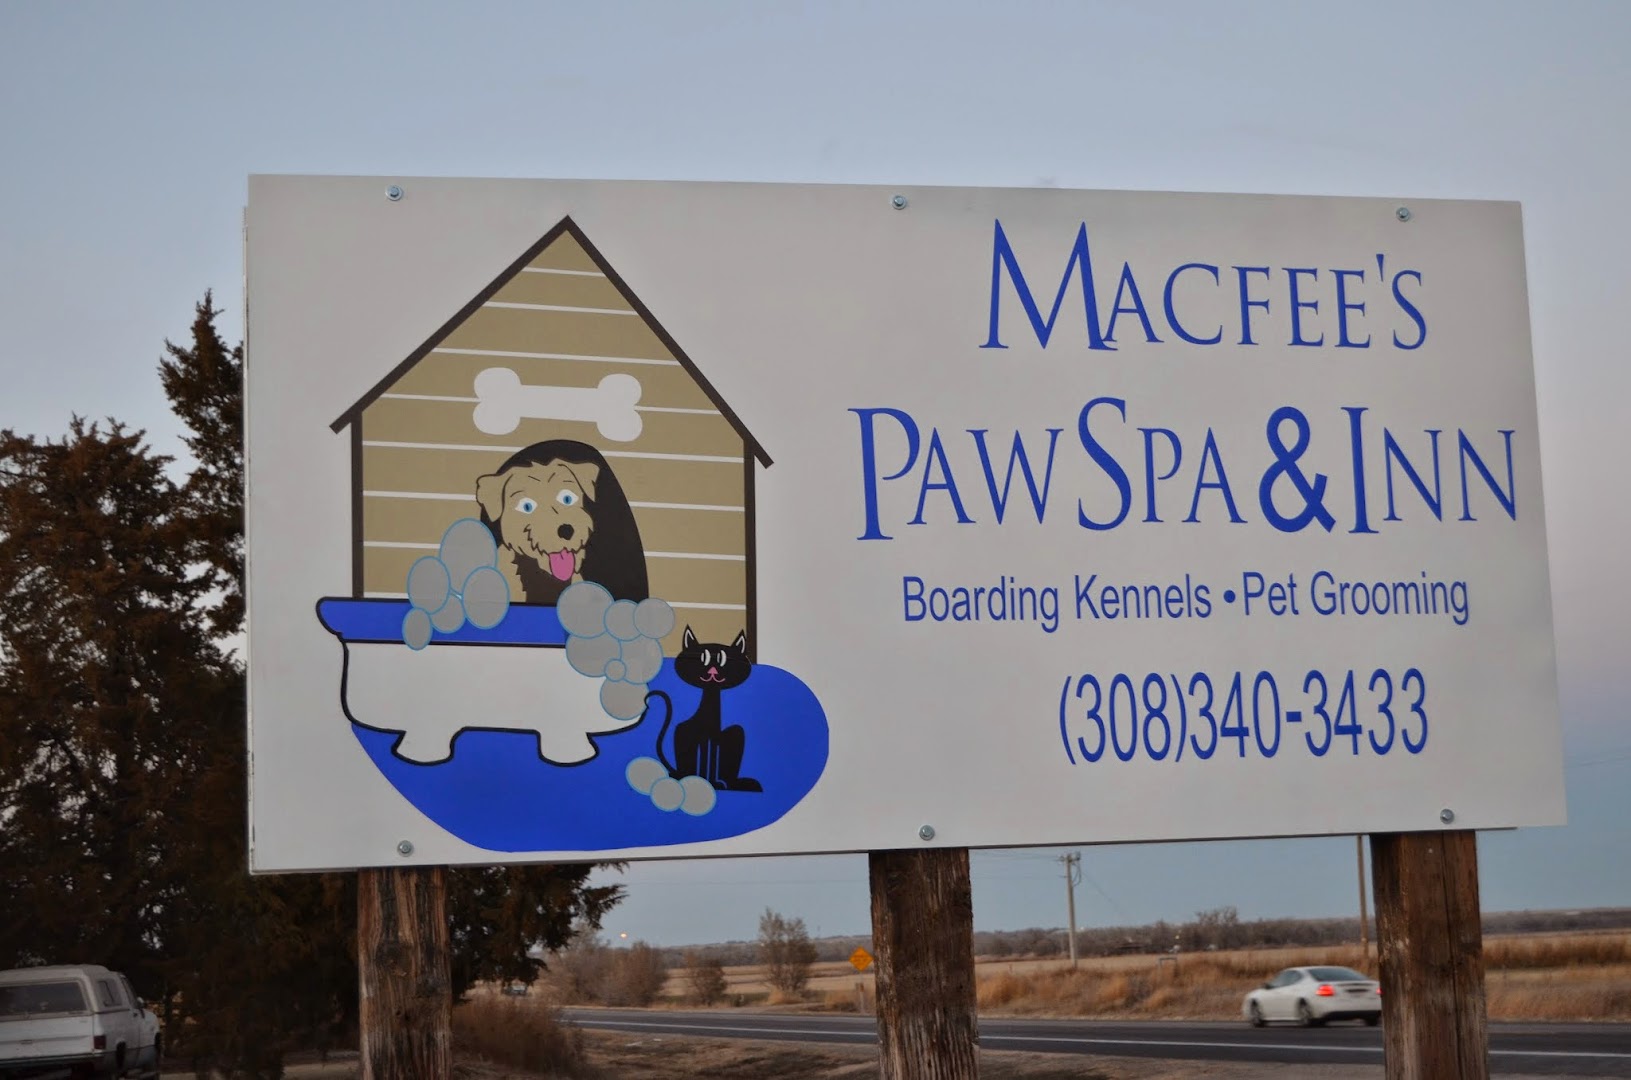 Macfee's Paw Spa & Inn